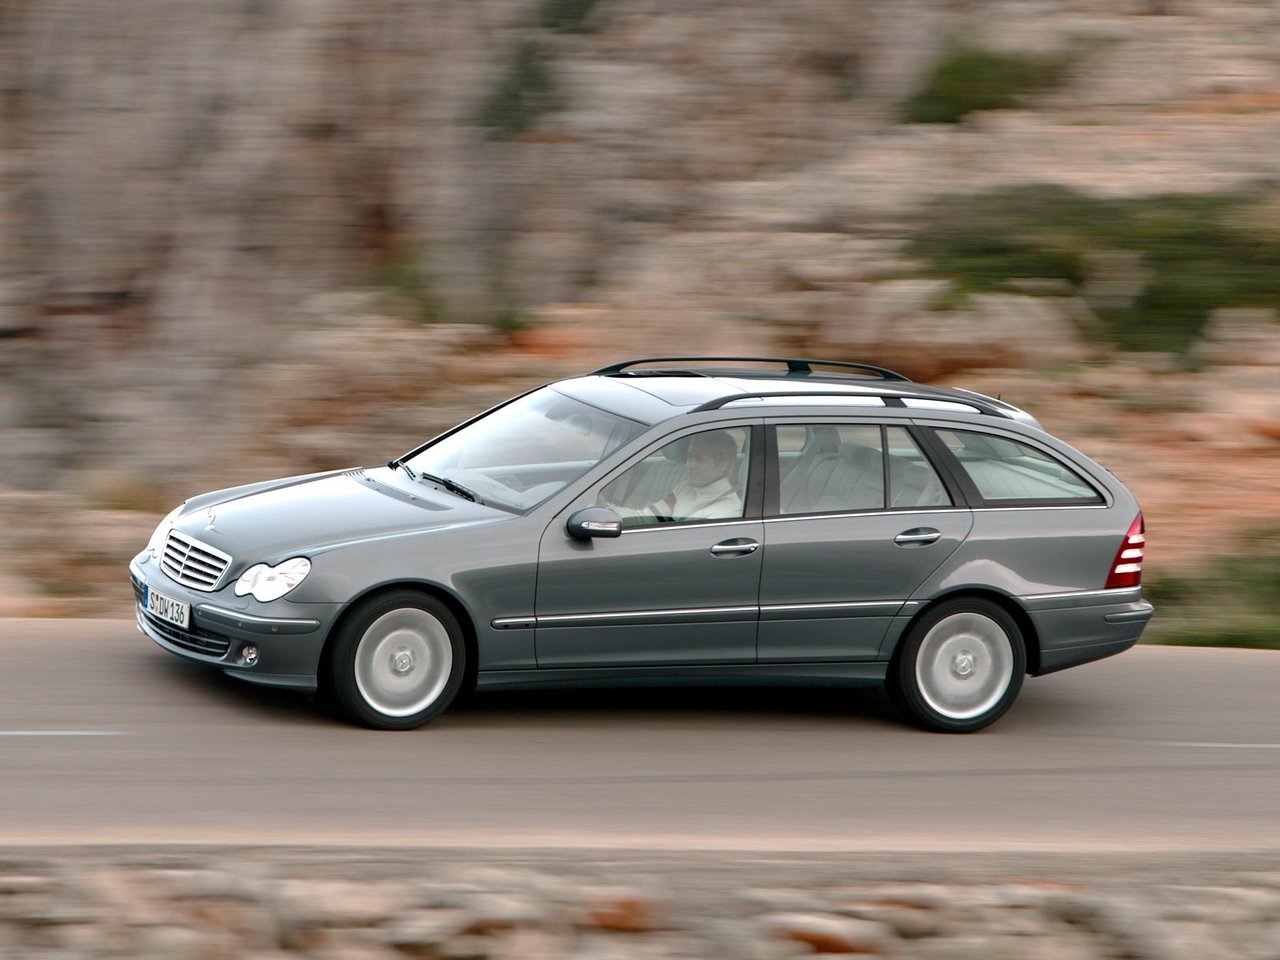 Расход газа одинадцати комплектаций универсала пять дверей Mercedes-Benz C-klasse. Разница стоимости заправки газом и бензином. Автономный пробег до и после установки ГБО.